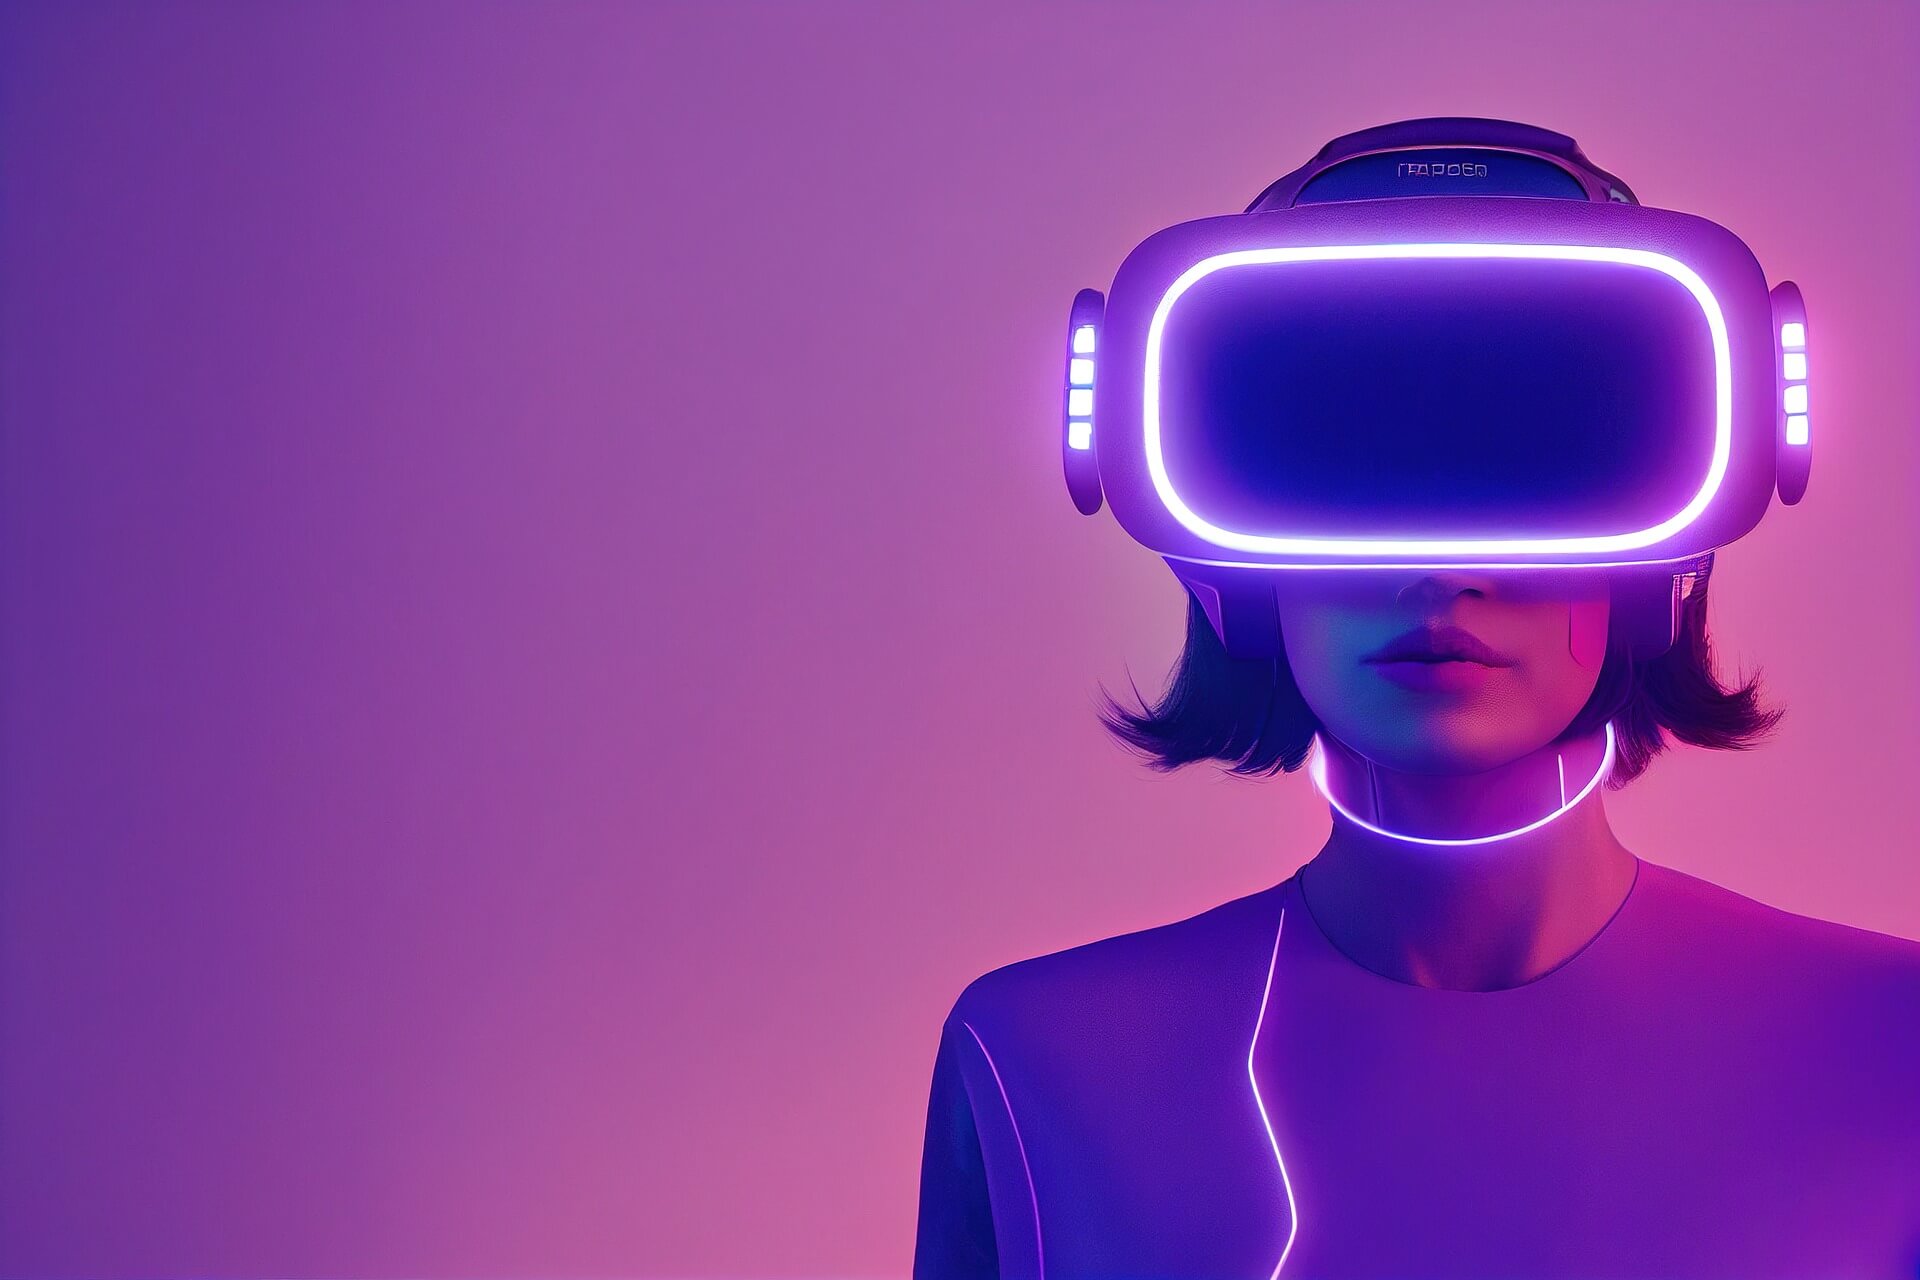 这是一张图片，展示了一个女性角色戴着虚拟现实头盔，背景是紫色调，整体风格现代科技感十足。